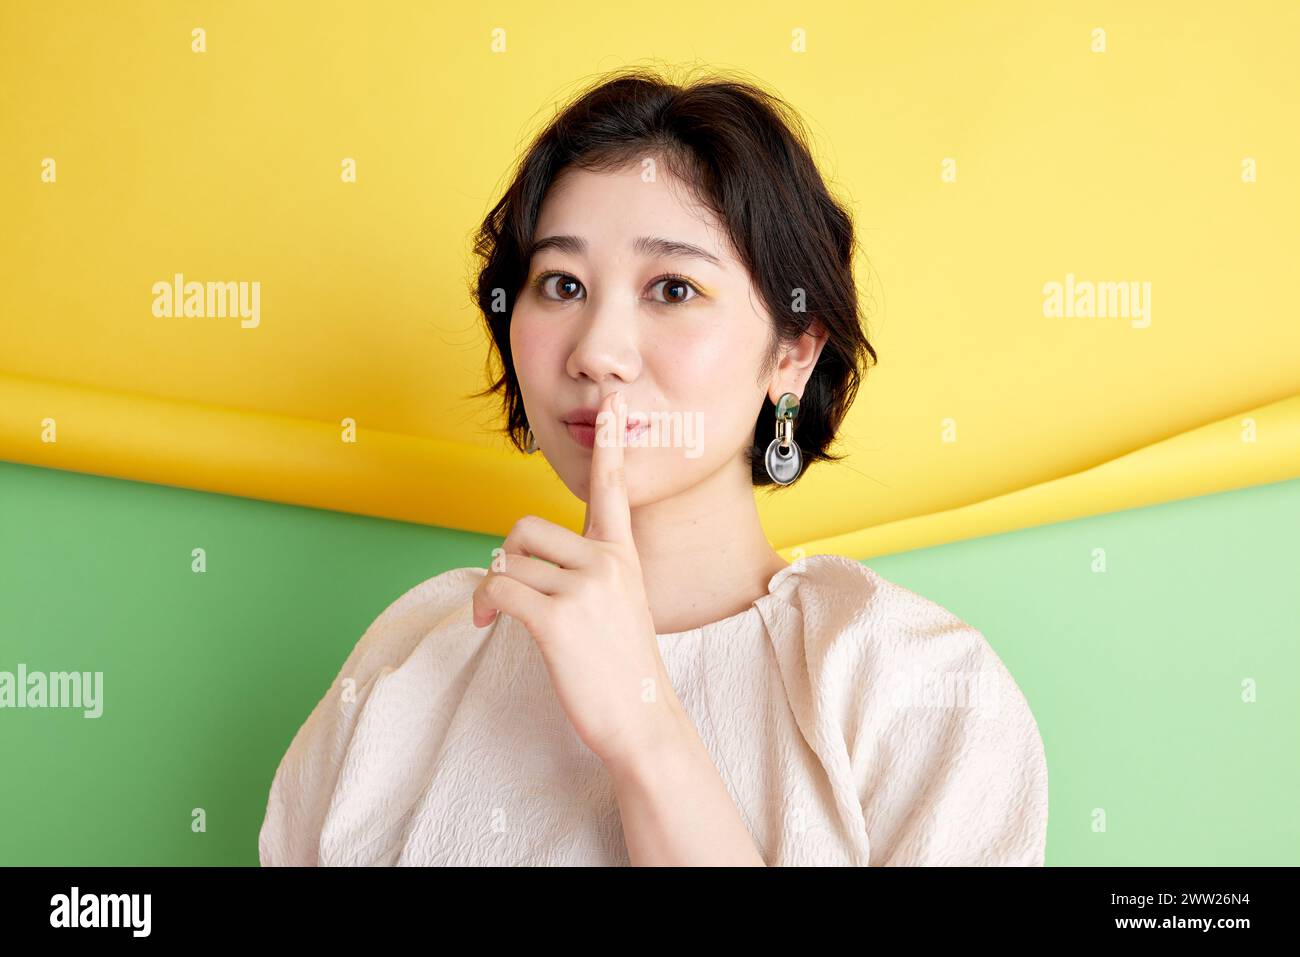 Donna asiatica con il dito sulle labbra su sfondo giallo e verde Foto Stock